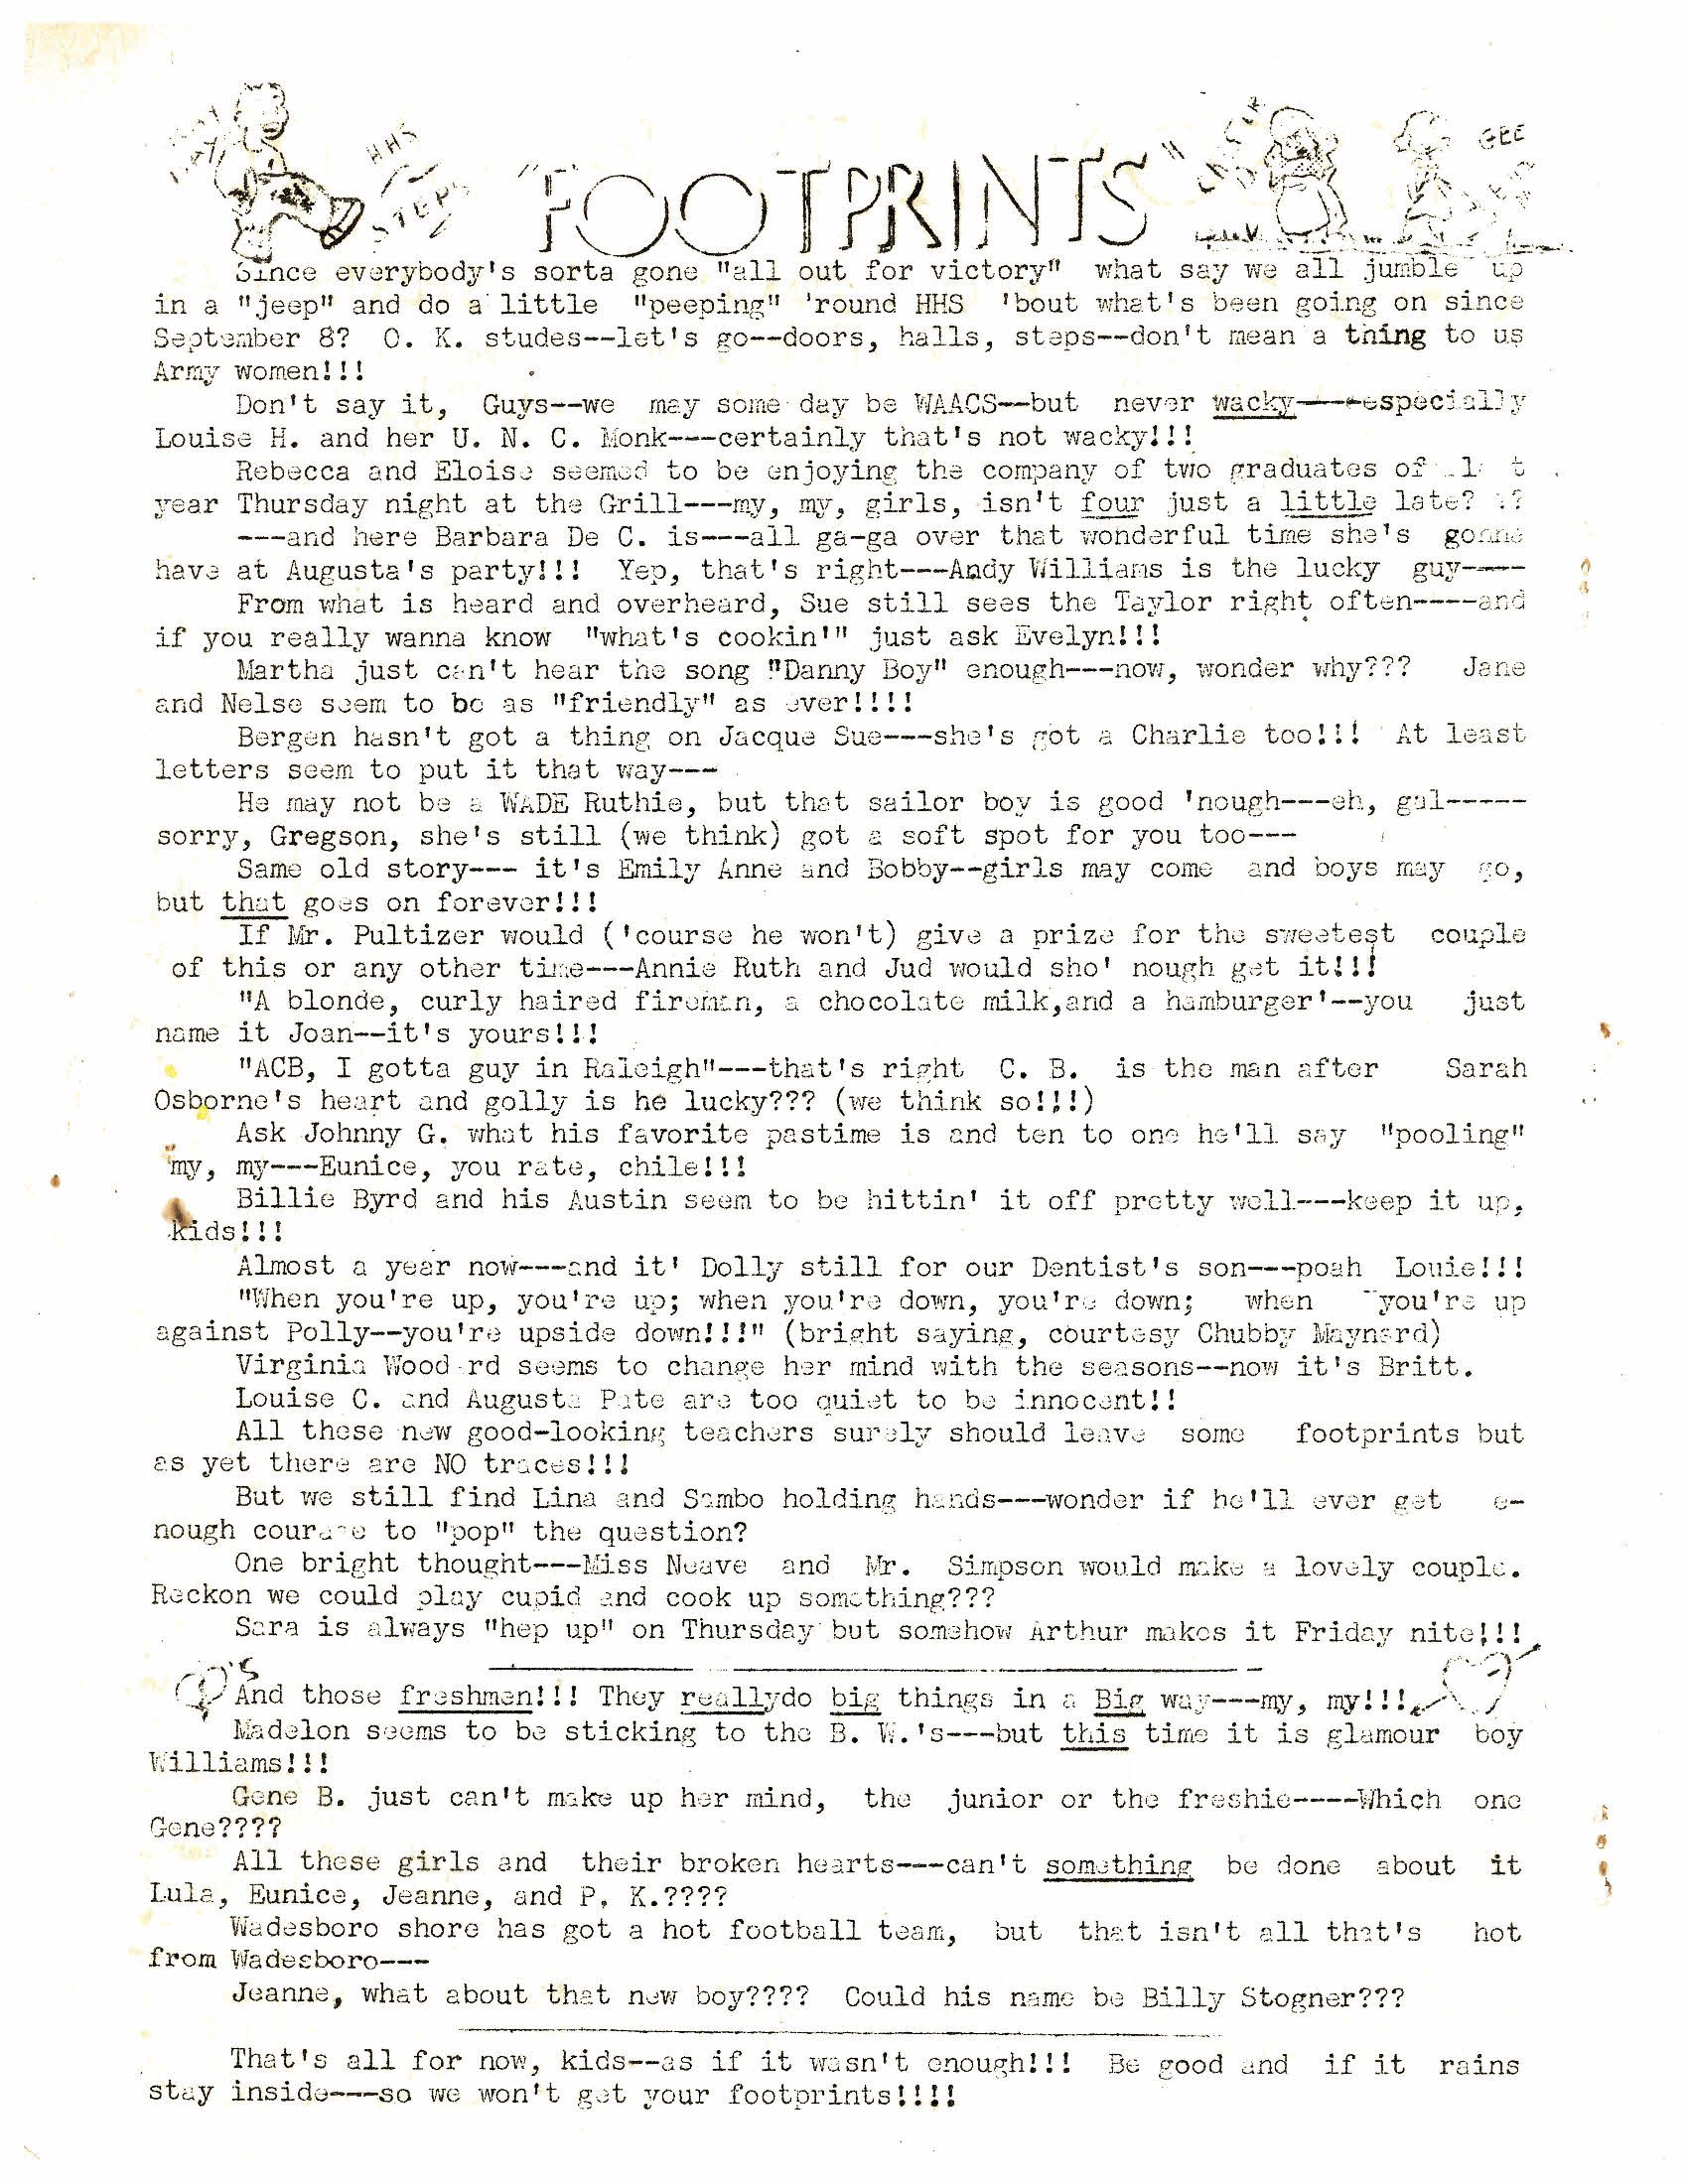 Sandspur October 21, 1941 (6).jpg